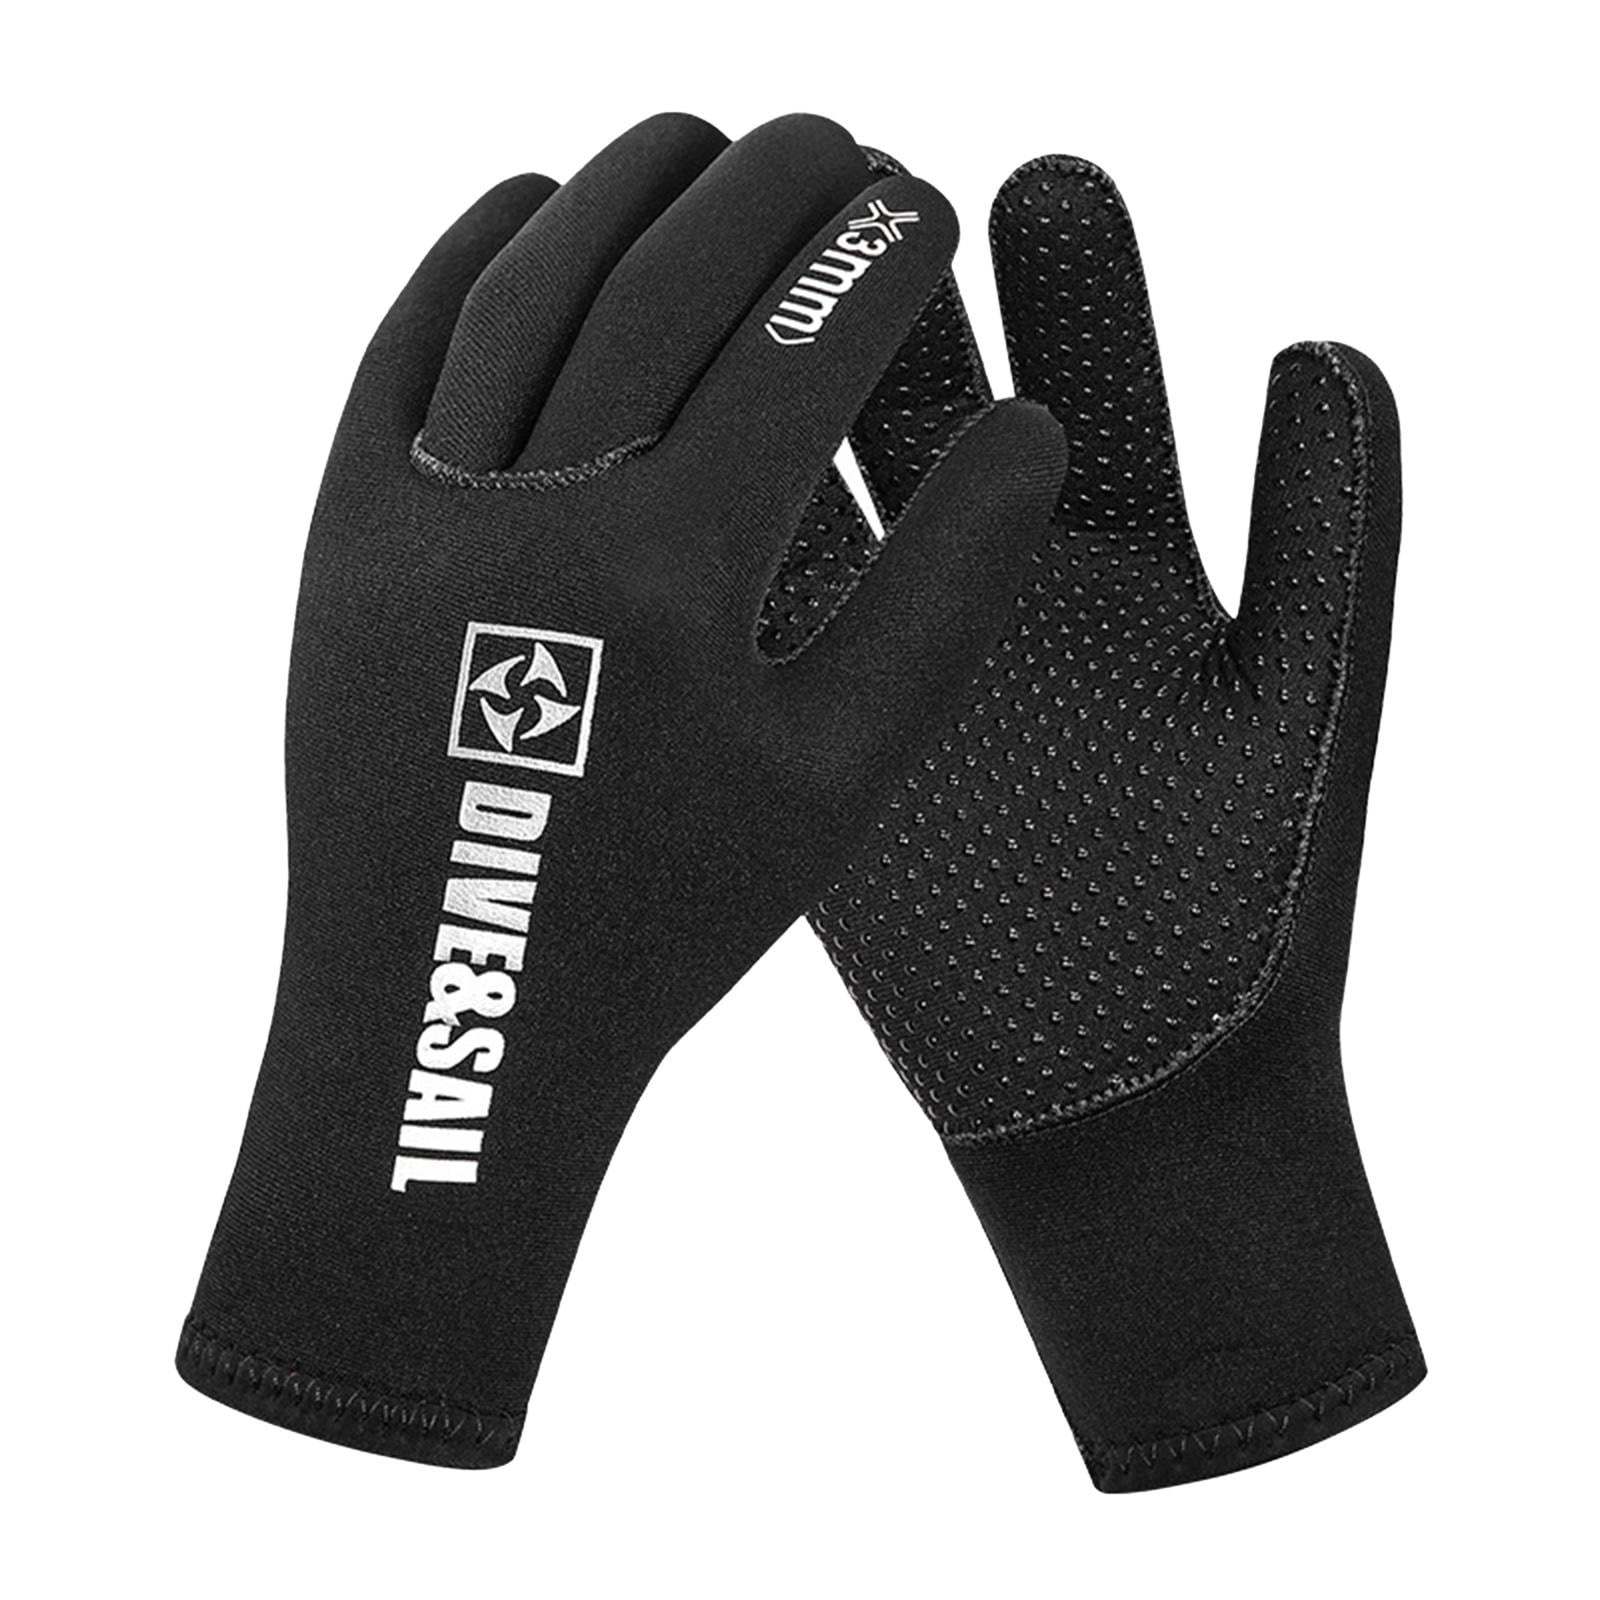 Adult Wetsuit Black Gloves 3MM Neoprene Swimming Diving Kayak Surf Socks Gloves. 